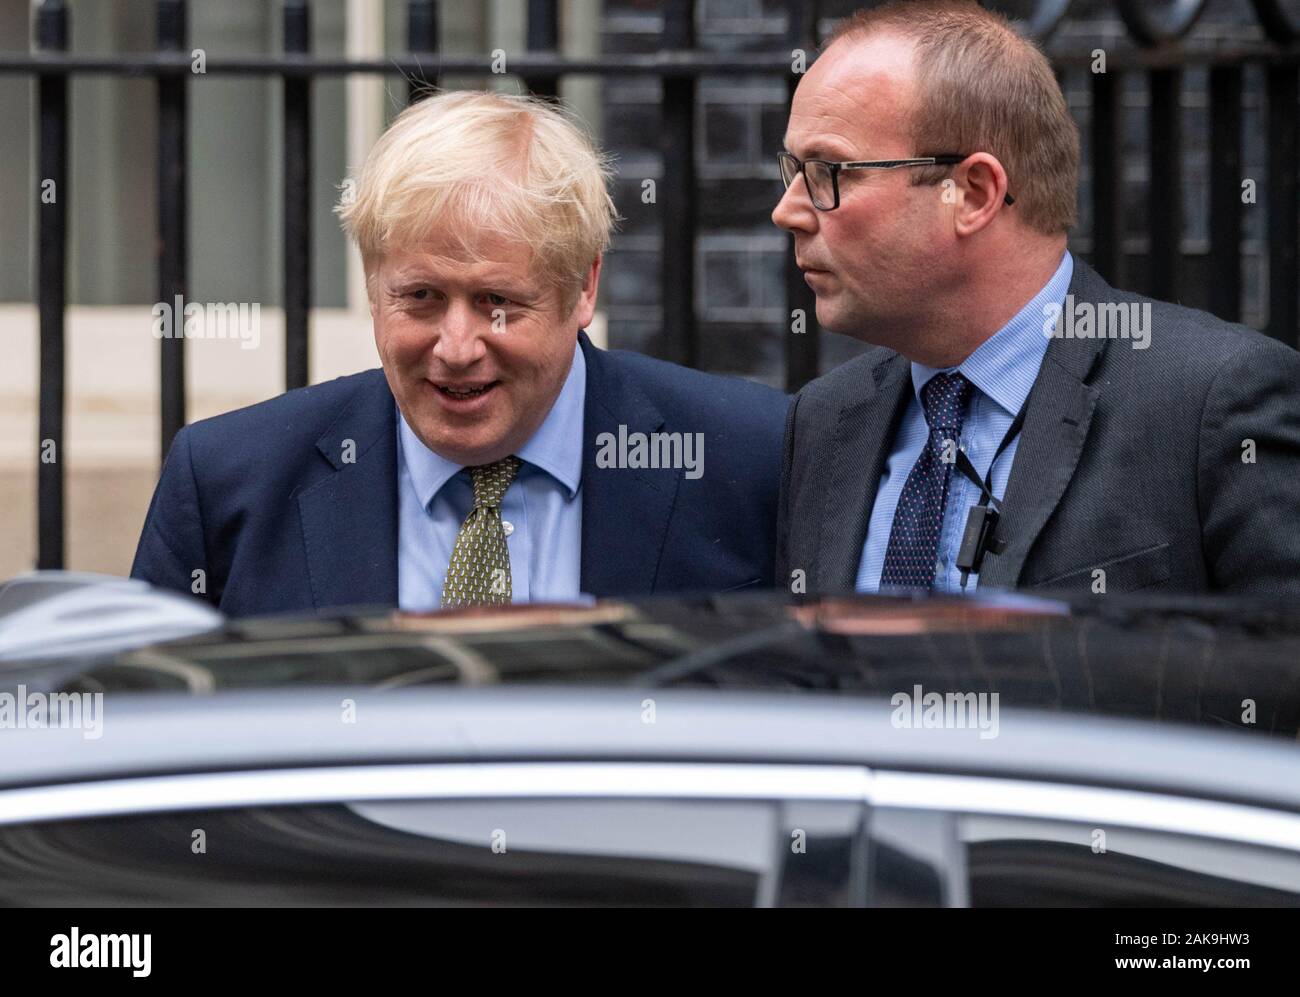 London UK 8 janvier 2020, Boris Johnson MP PC Premier ministre laisse 10 Downing Street pour les premiers ministres, l'heure des questions de crédit Londres Ian Davidson/Alamy Live News Banque D'Images